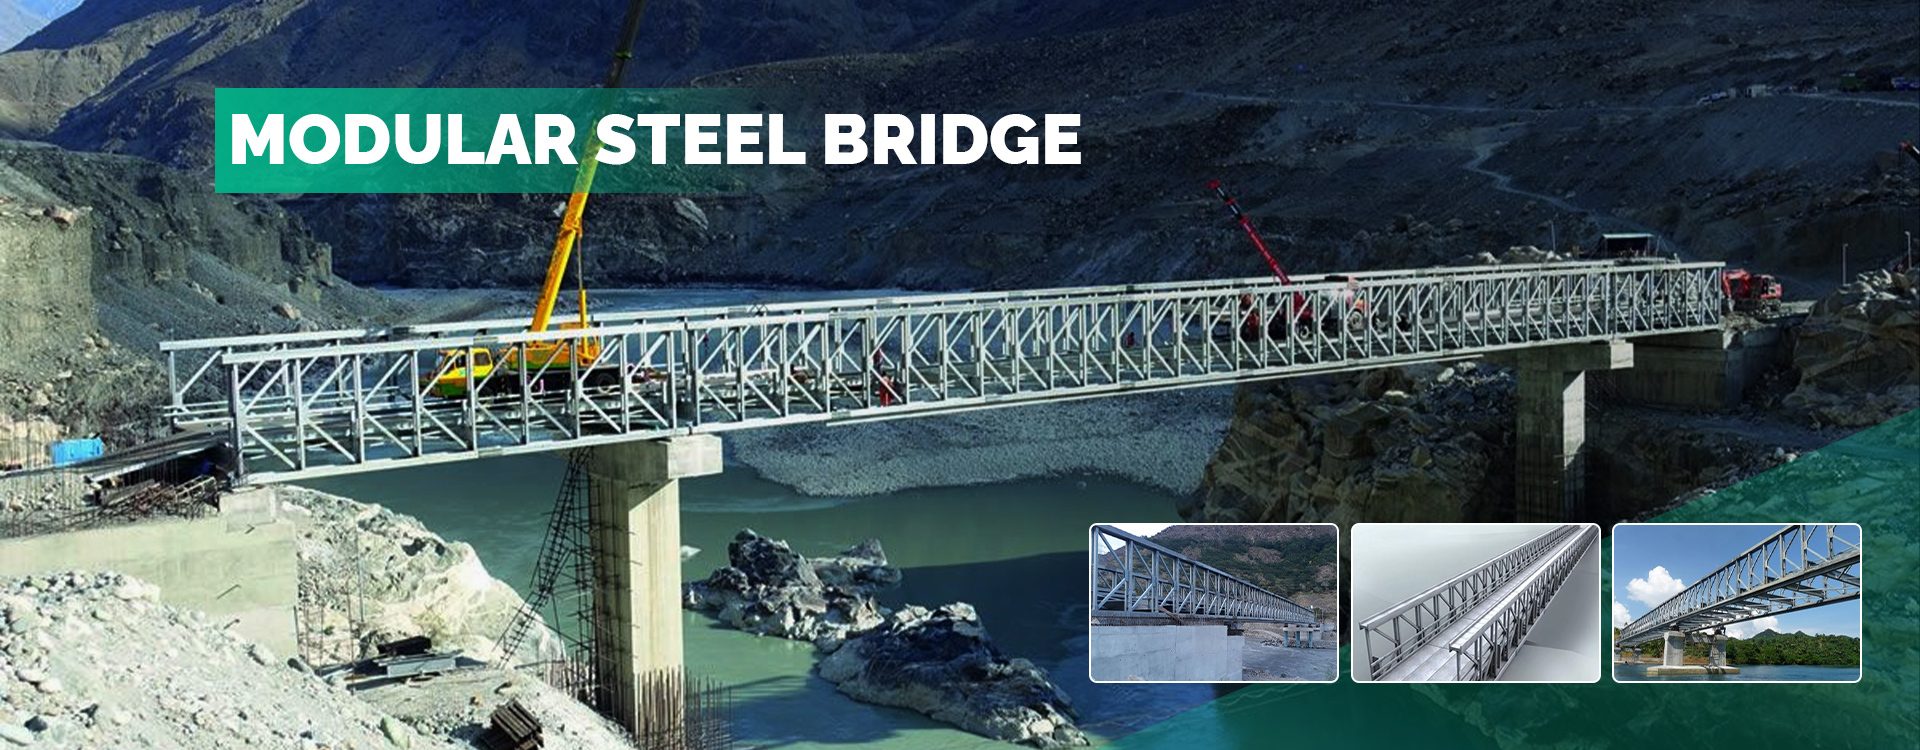 Modular Steel Bridge